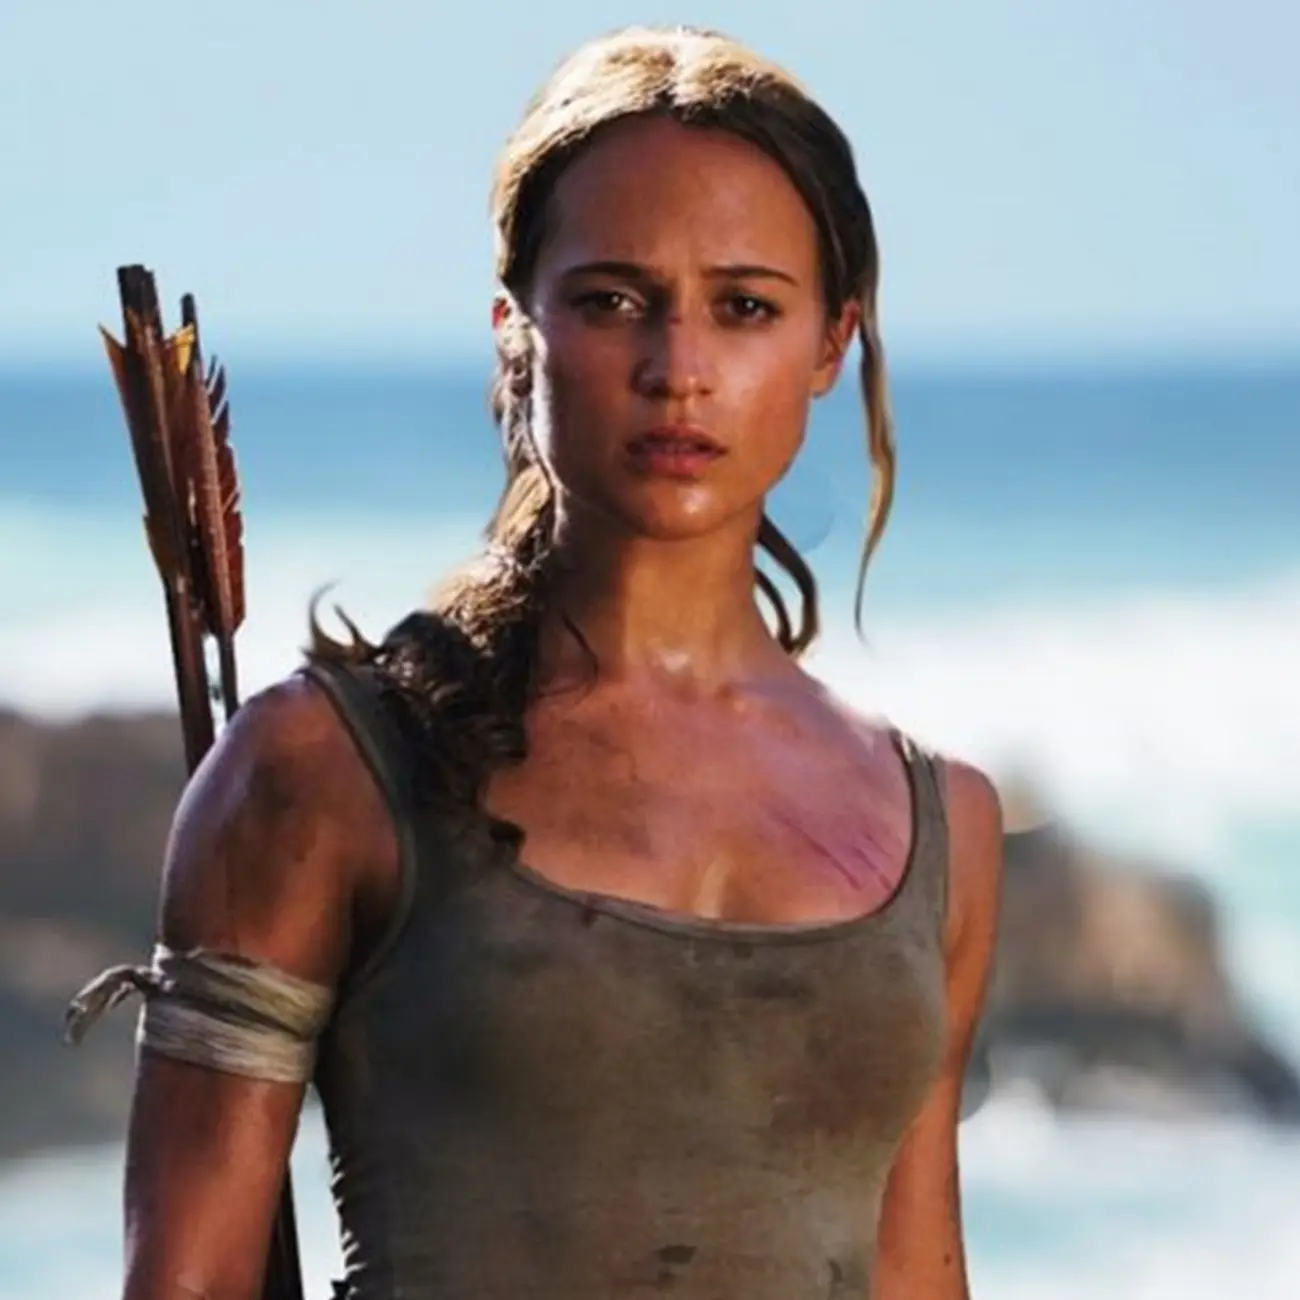 Tomb Raider: Sequência com Alicia Vikander encontra diretor e